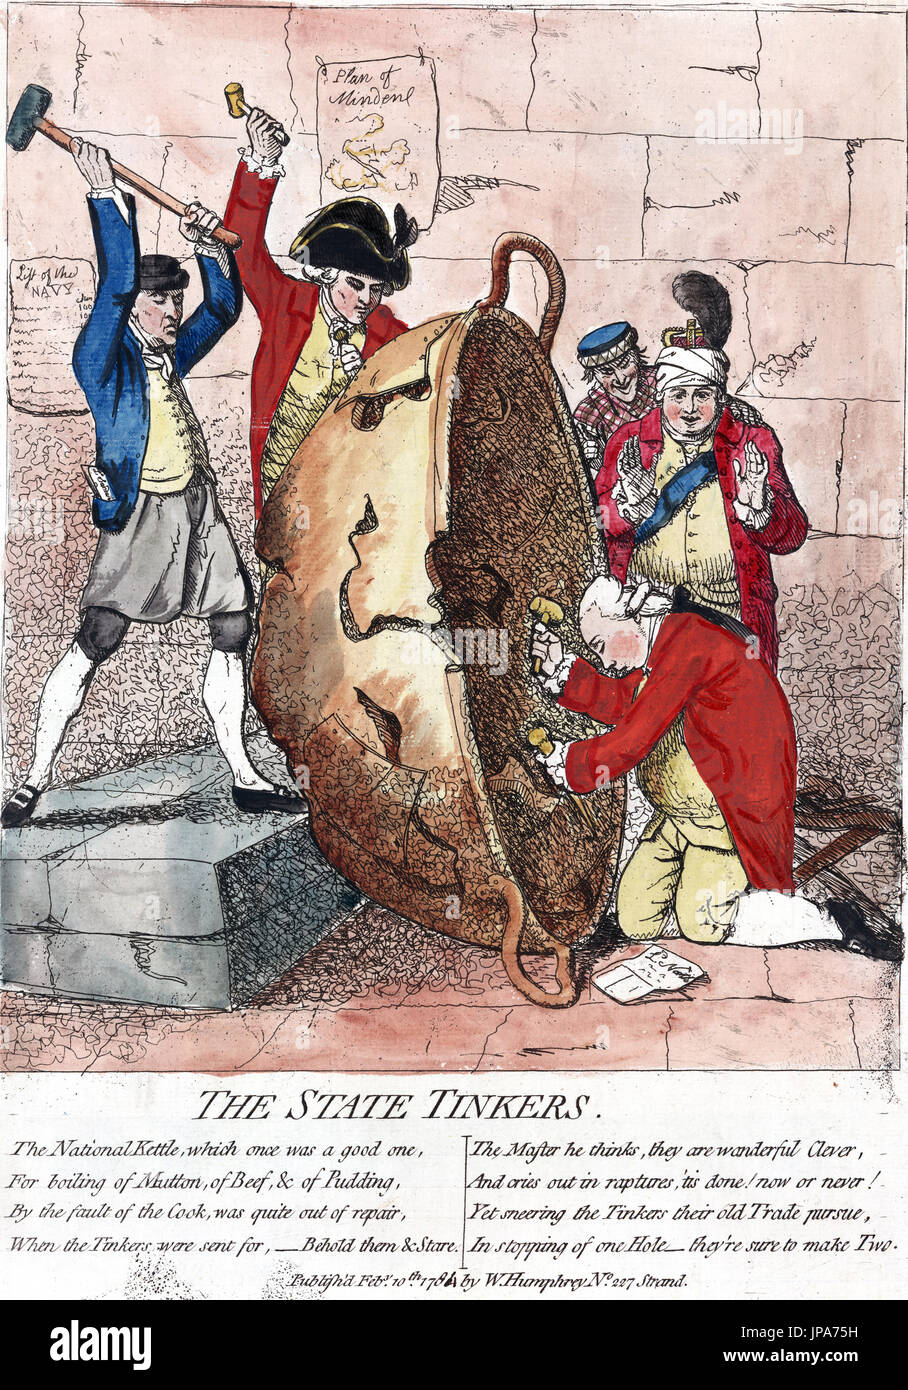 JAMES GILLRAY (1756-1815) englische Karikaturist. "Der Staat bastelt" 1780 Gravur zeigt Lord North auf den Knien von König George III beobachtete, wie sie alle verschwören, um das Land durch ihren Mangel an Fähigkeit zu ruinieren. Stockfoto